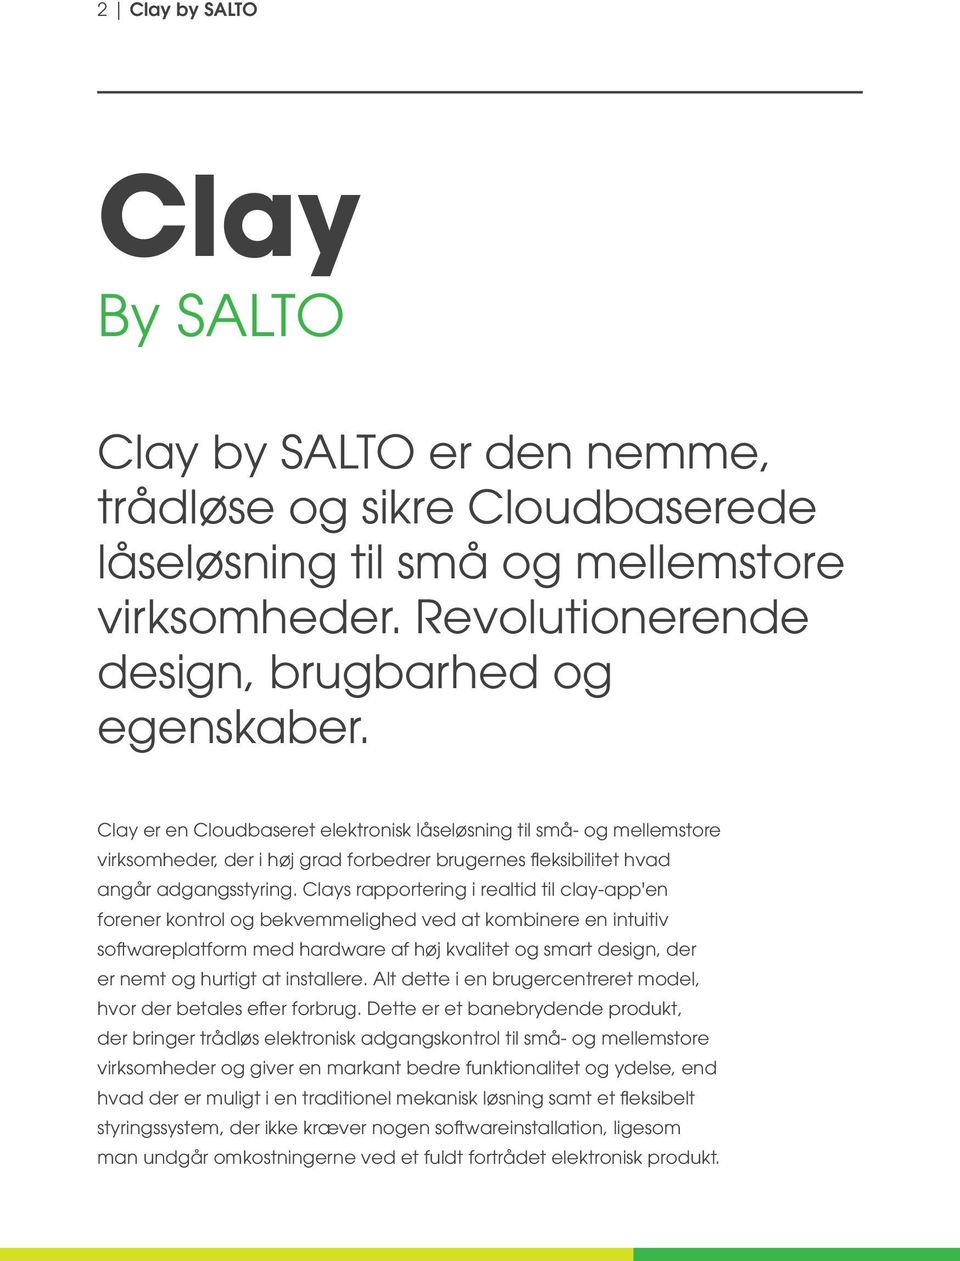 Clays rapportering i realtid til clay-app'en forener kontrol og bekvemmelighed ved at kombinere en intuitiv softwareplatform med hardware af høj kvalitet og smart design, der er nemt og hurtigt at